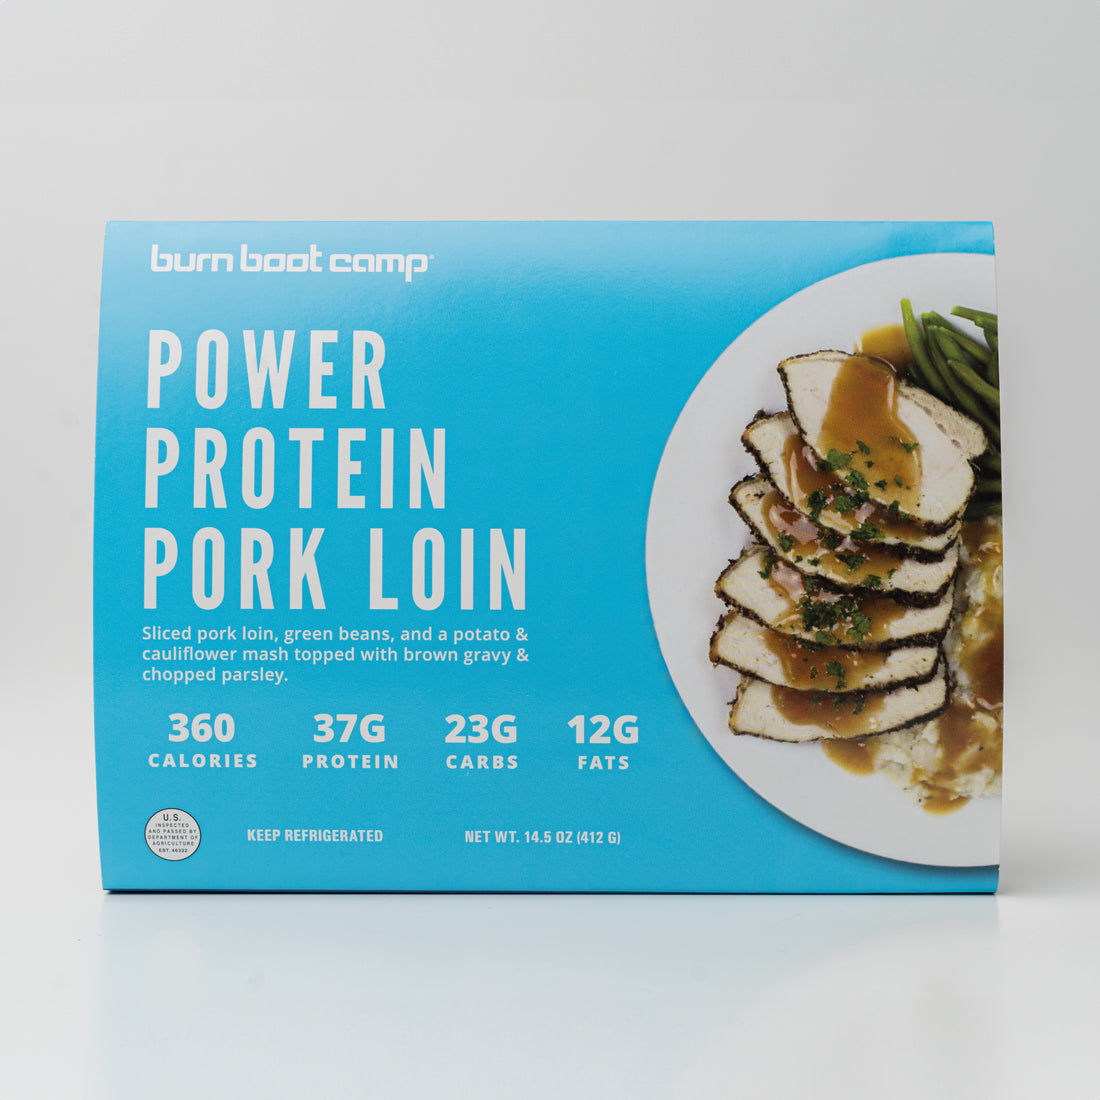 Power Protein Pork Loin